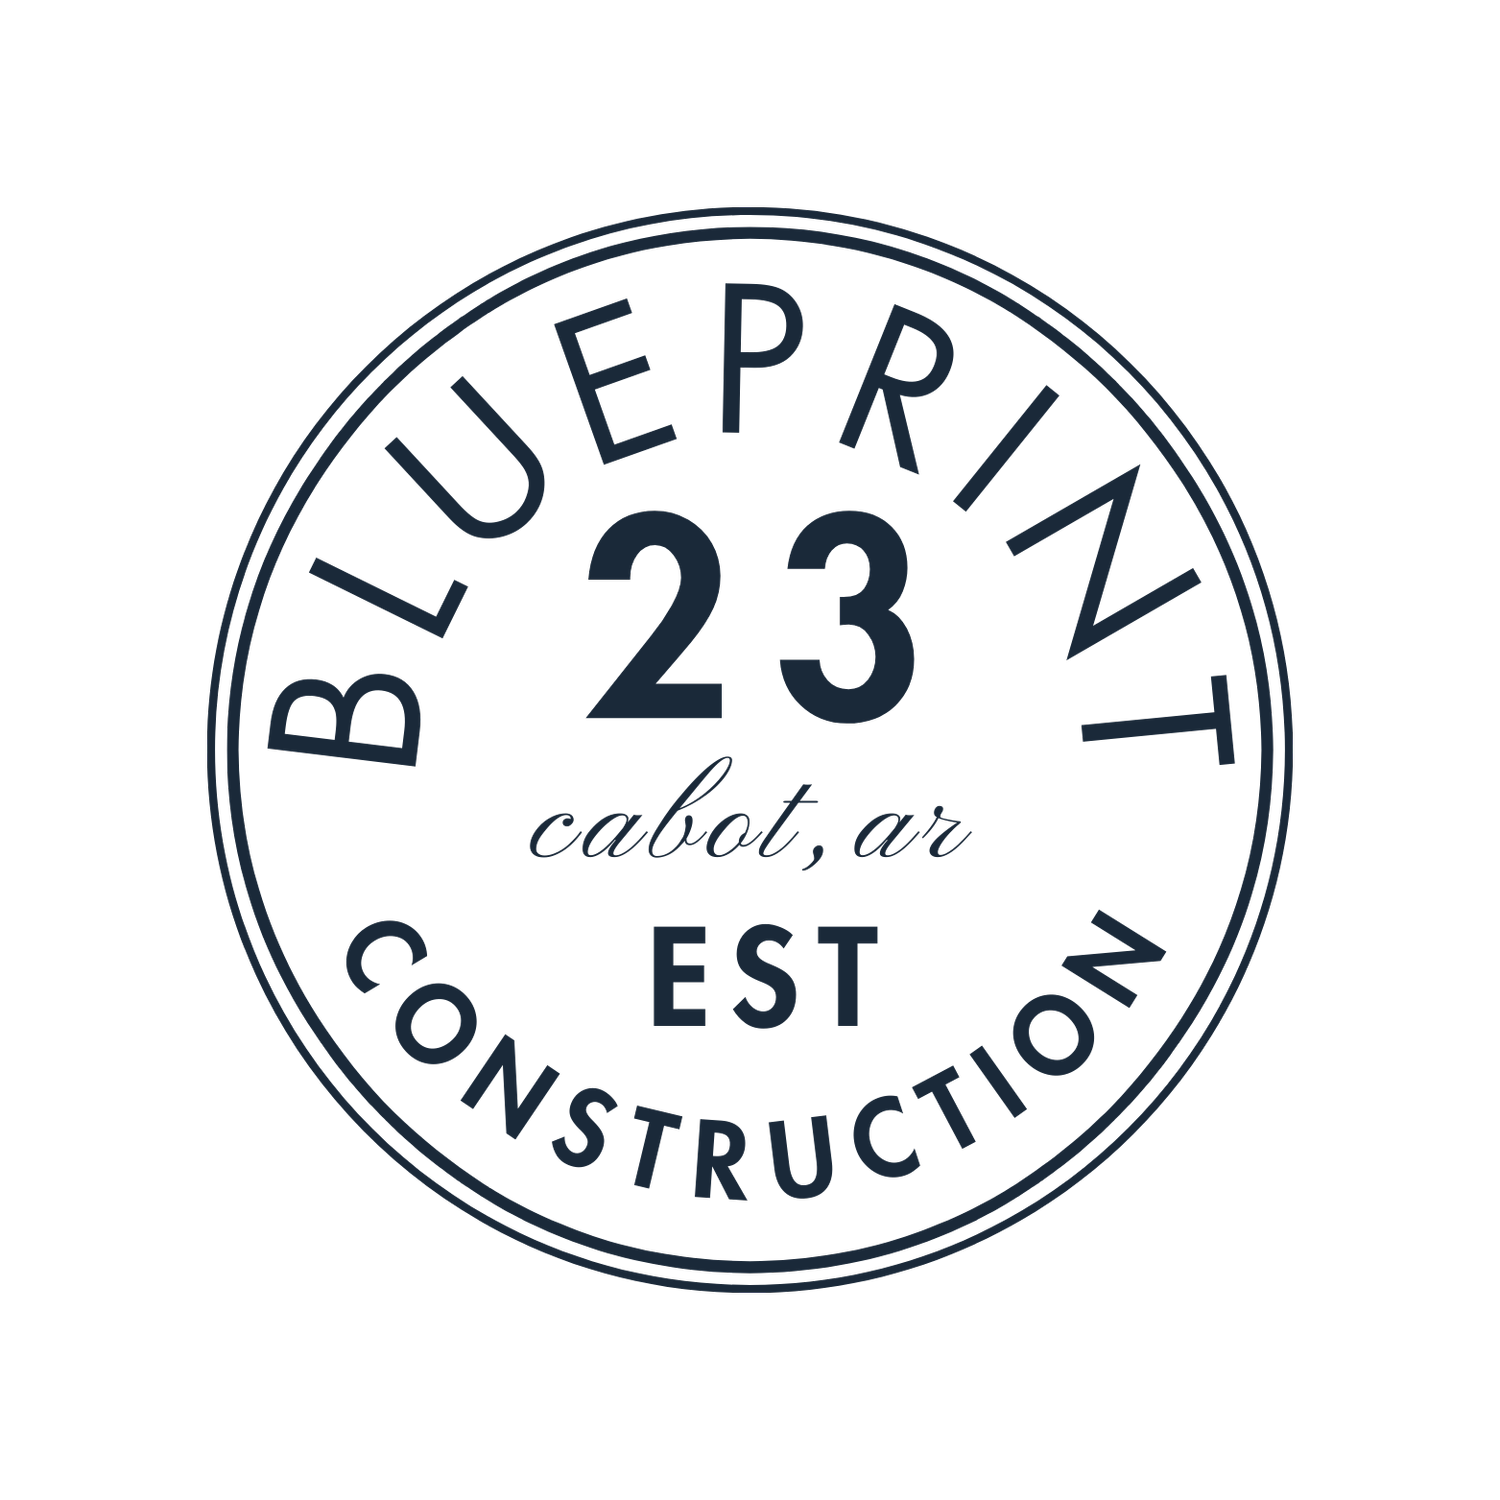 Blueprint